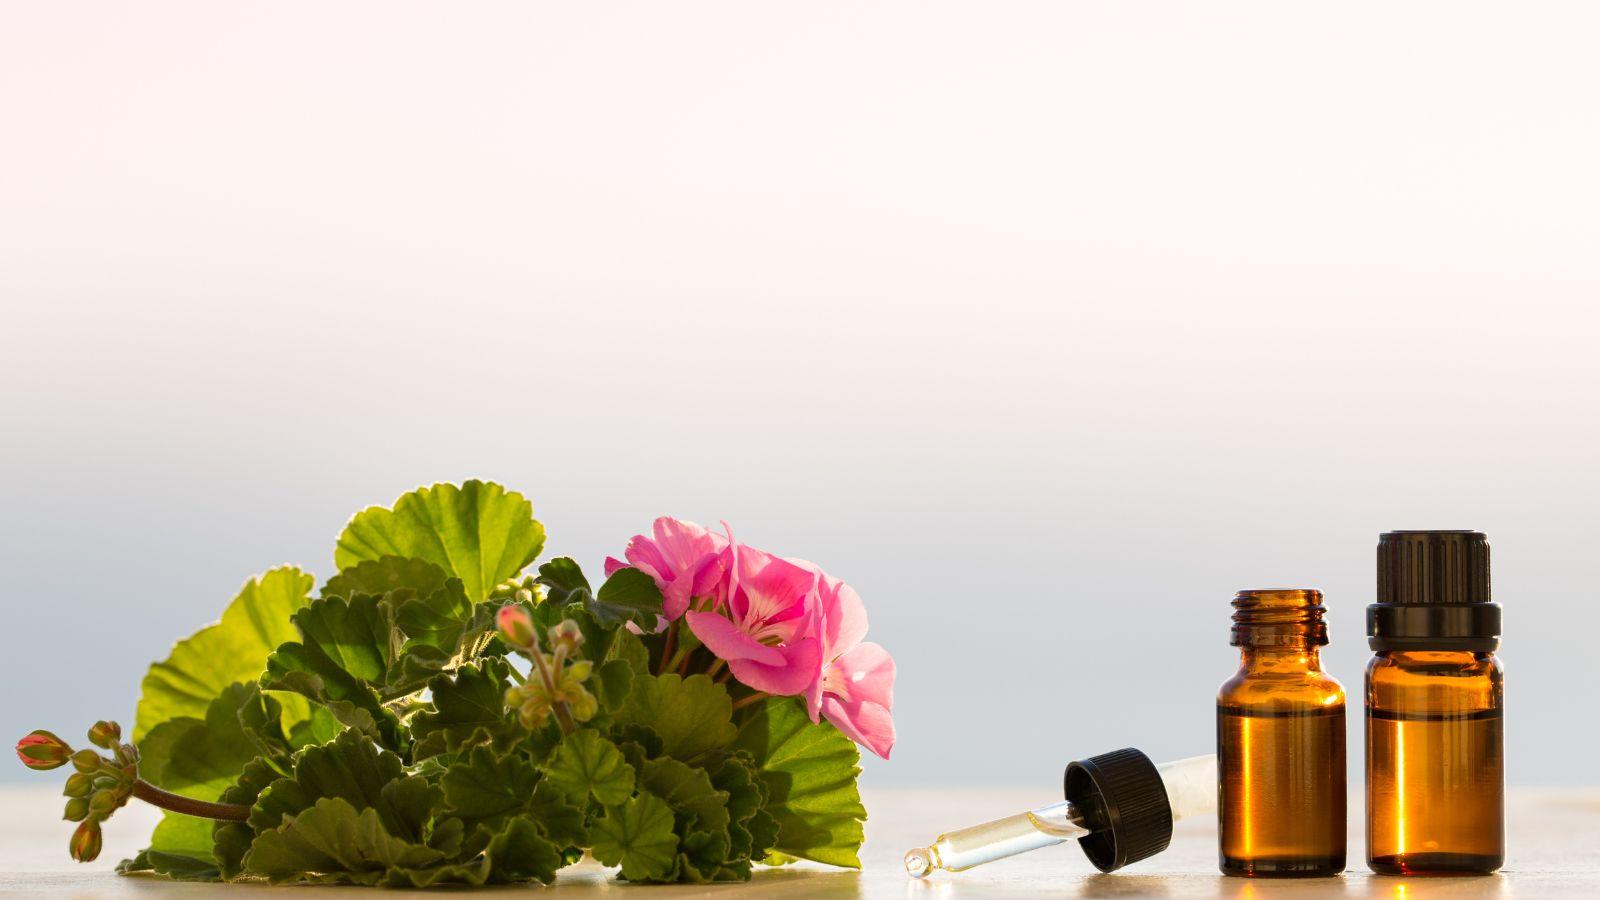 image of geranium flowers next to some geranium essential oil bottles